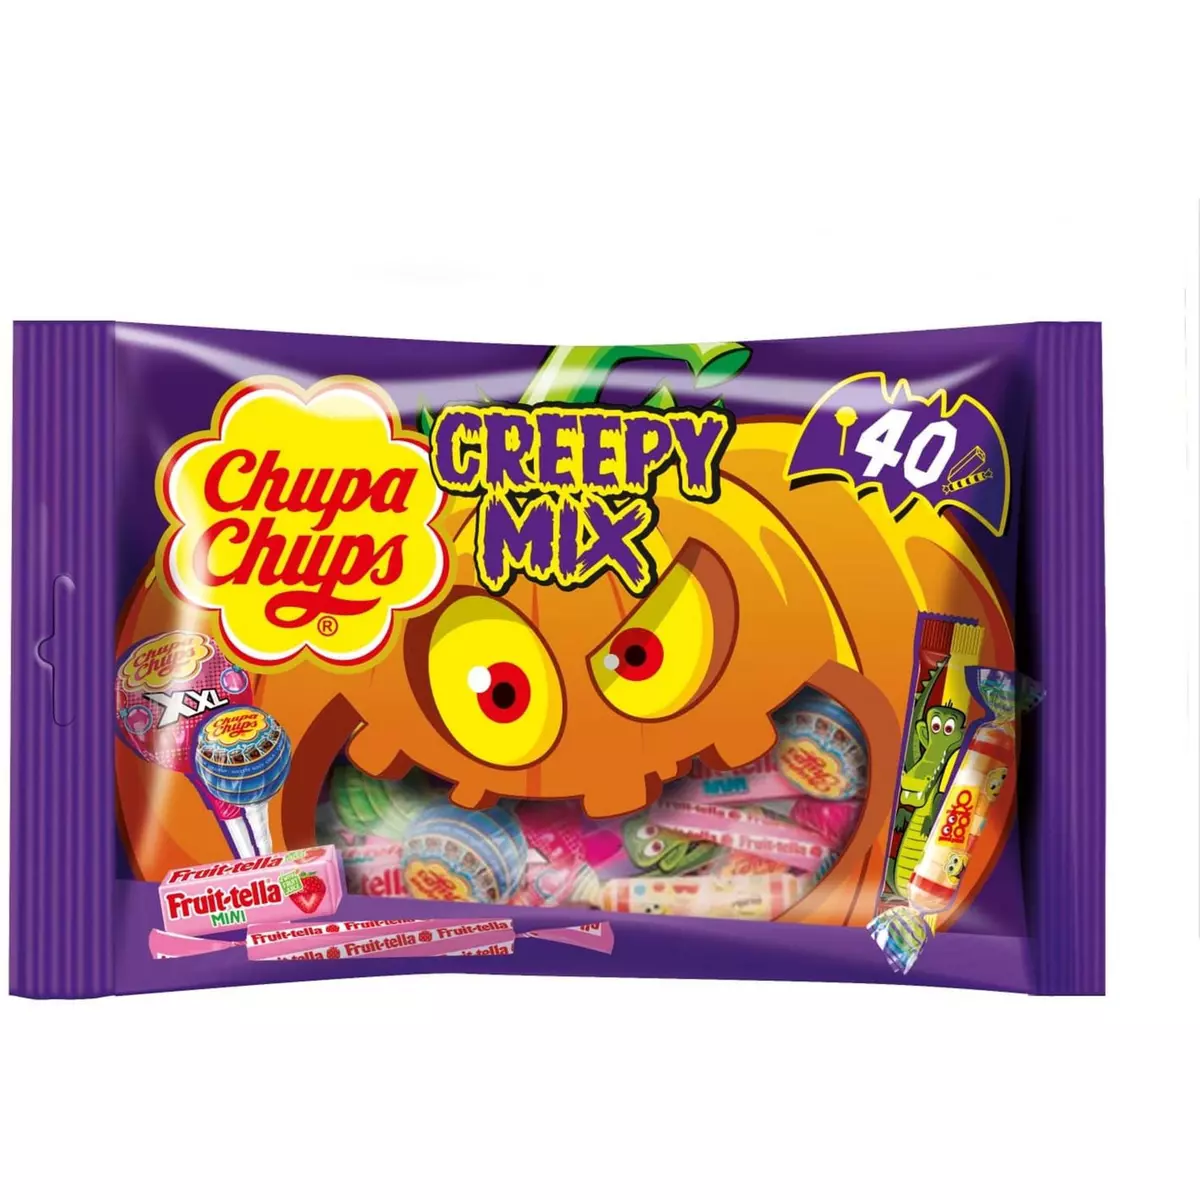 CHUPA CHUPS Creepy mix assortiment de bonbons 440g